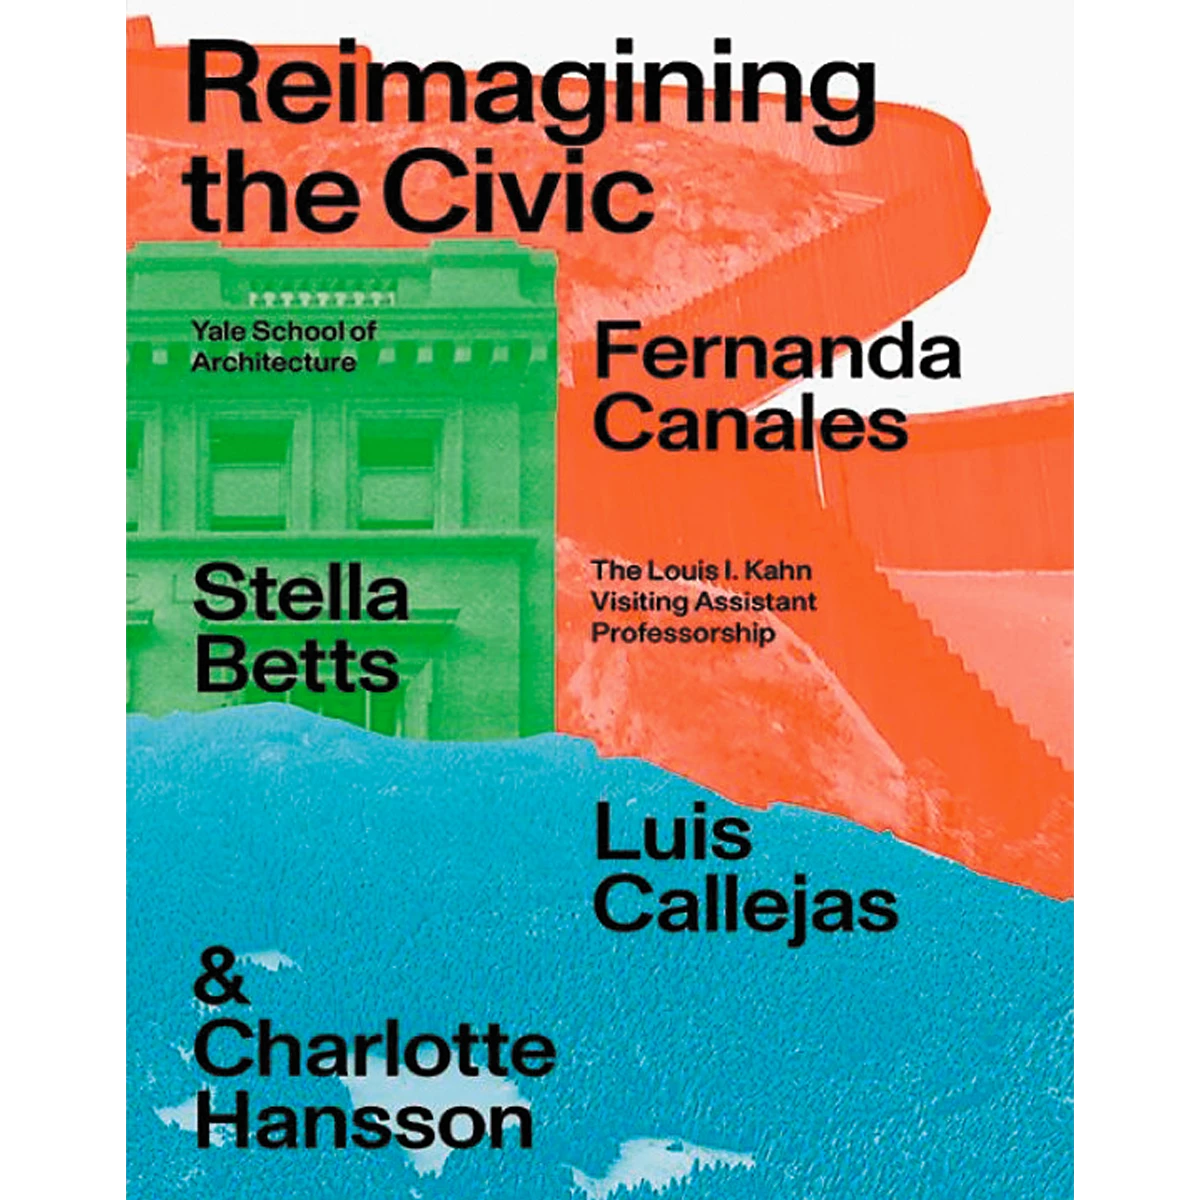 Reimagining the Civic